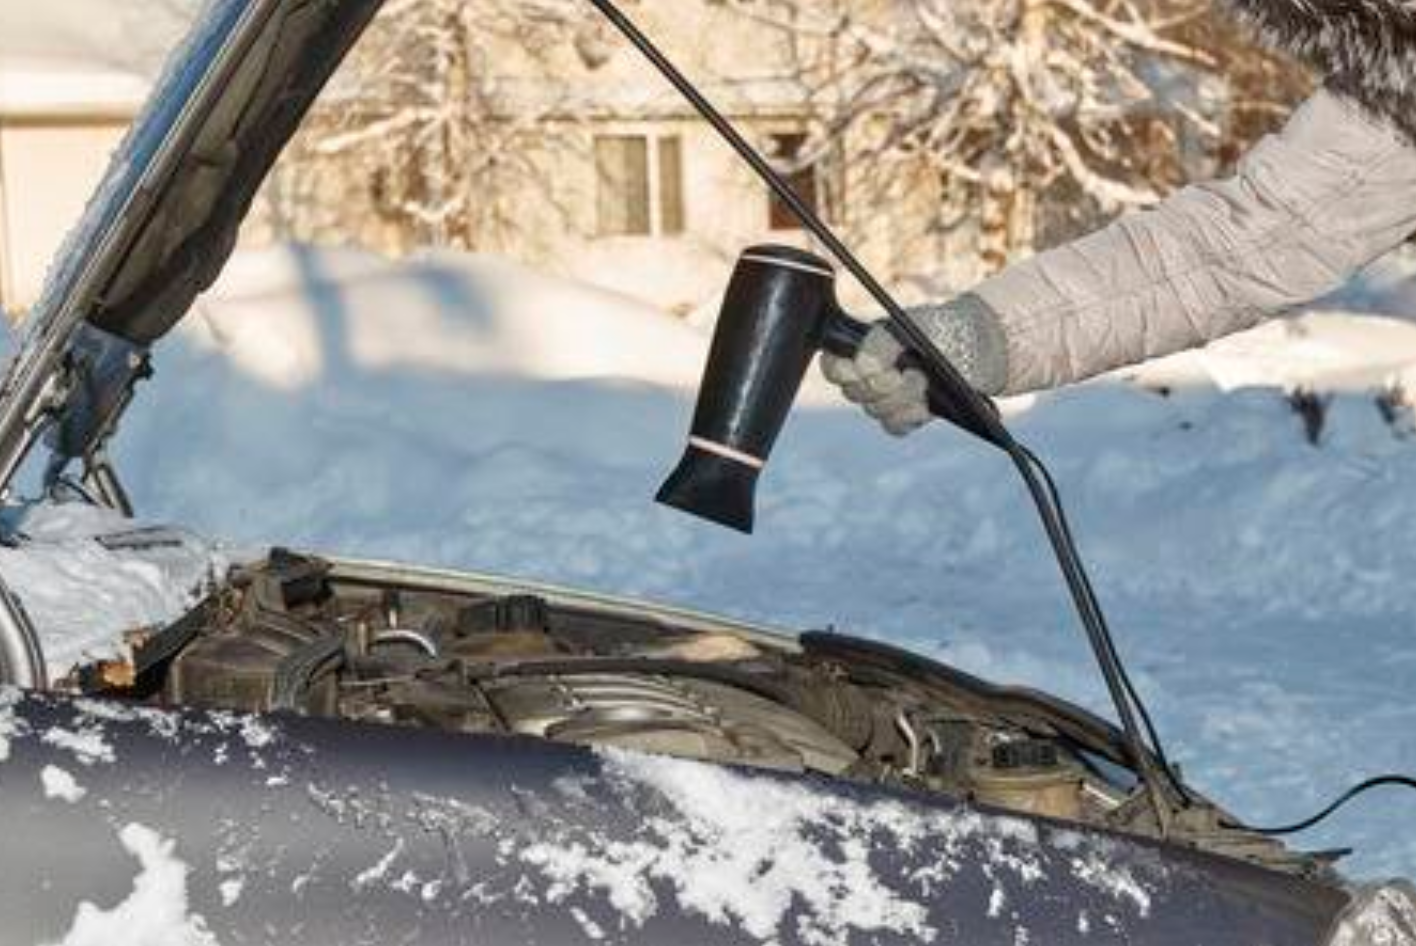 إحماء السيارة في الشتاء.. فائدة للمحرك أم خرافة؟